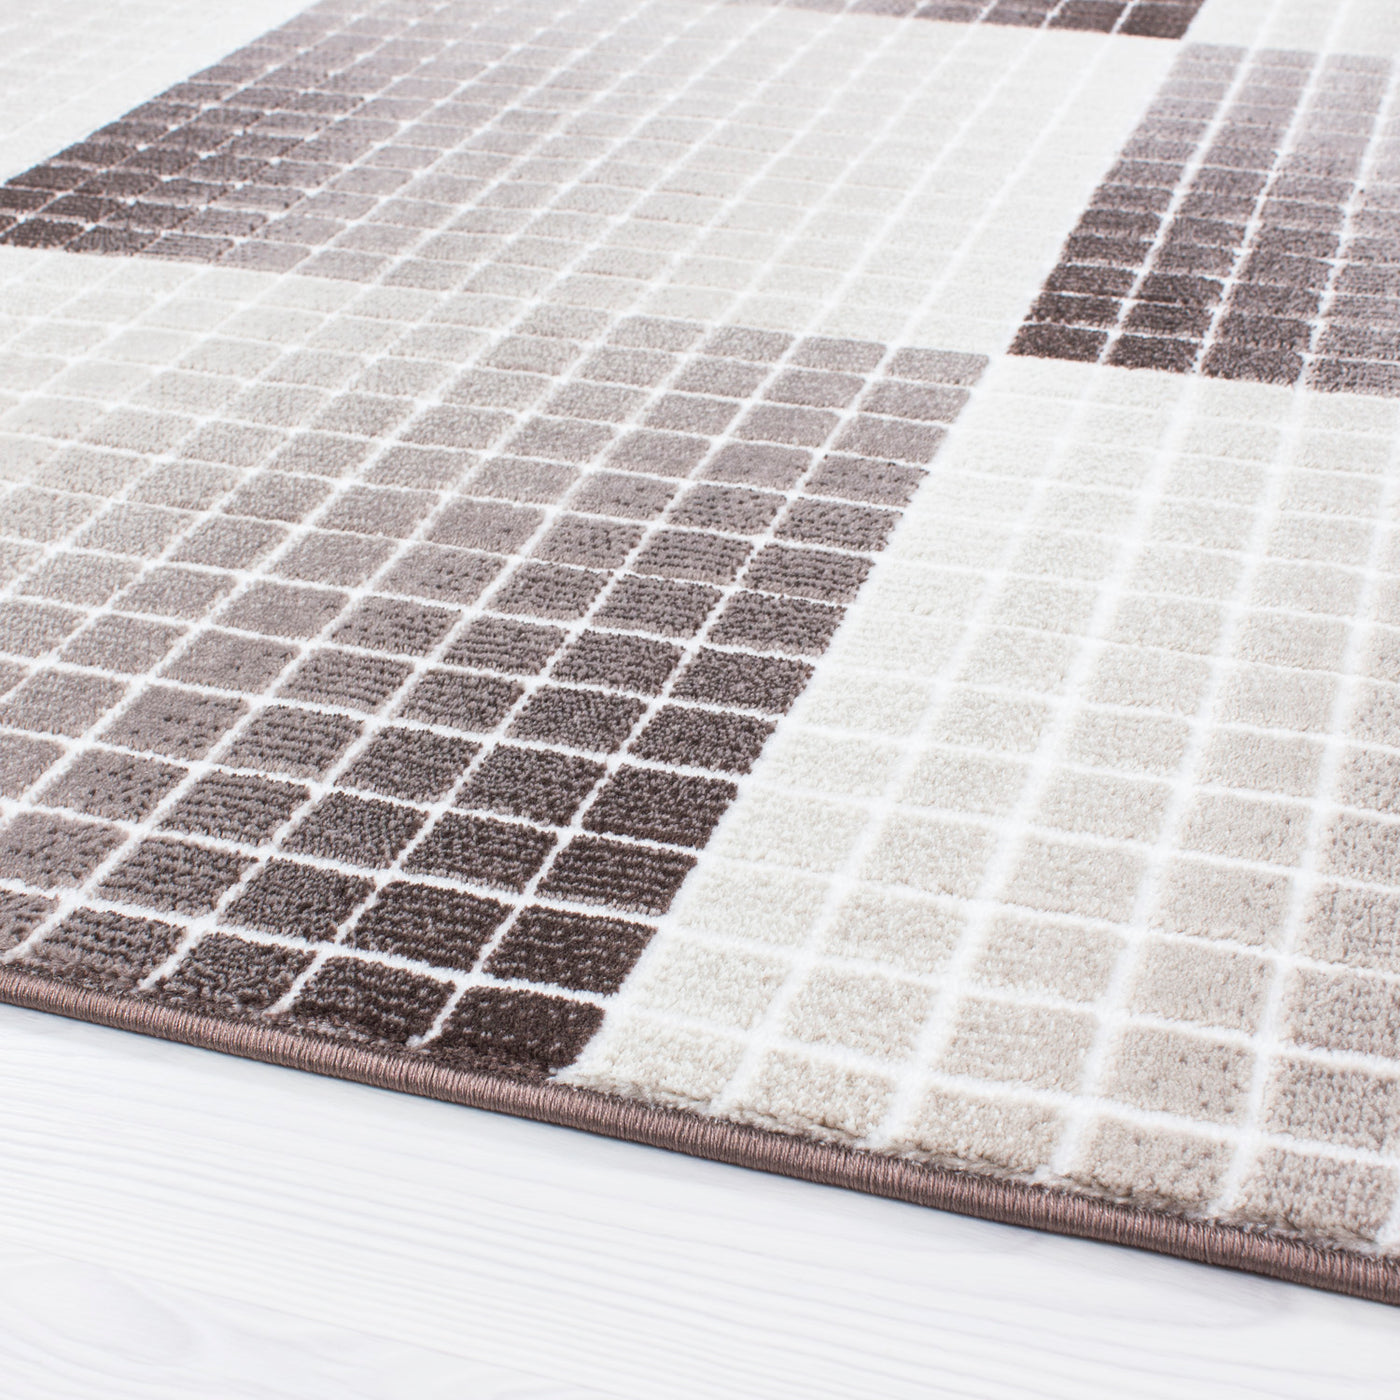 Designer Teppich Modern Wohnzimmer Kurzflor Karo Muster Mosaik Optik Meliert Braun Beige Creme